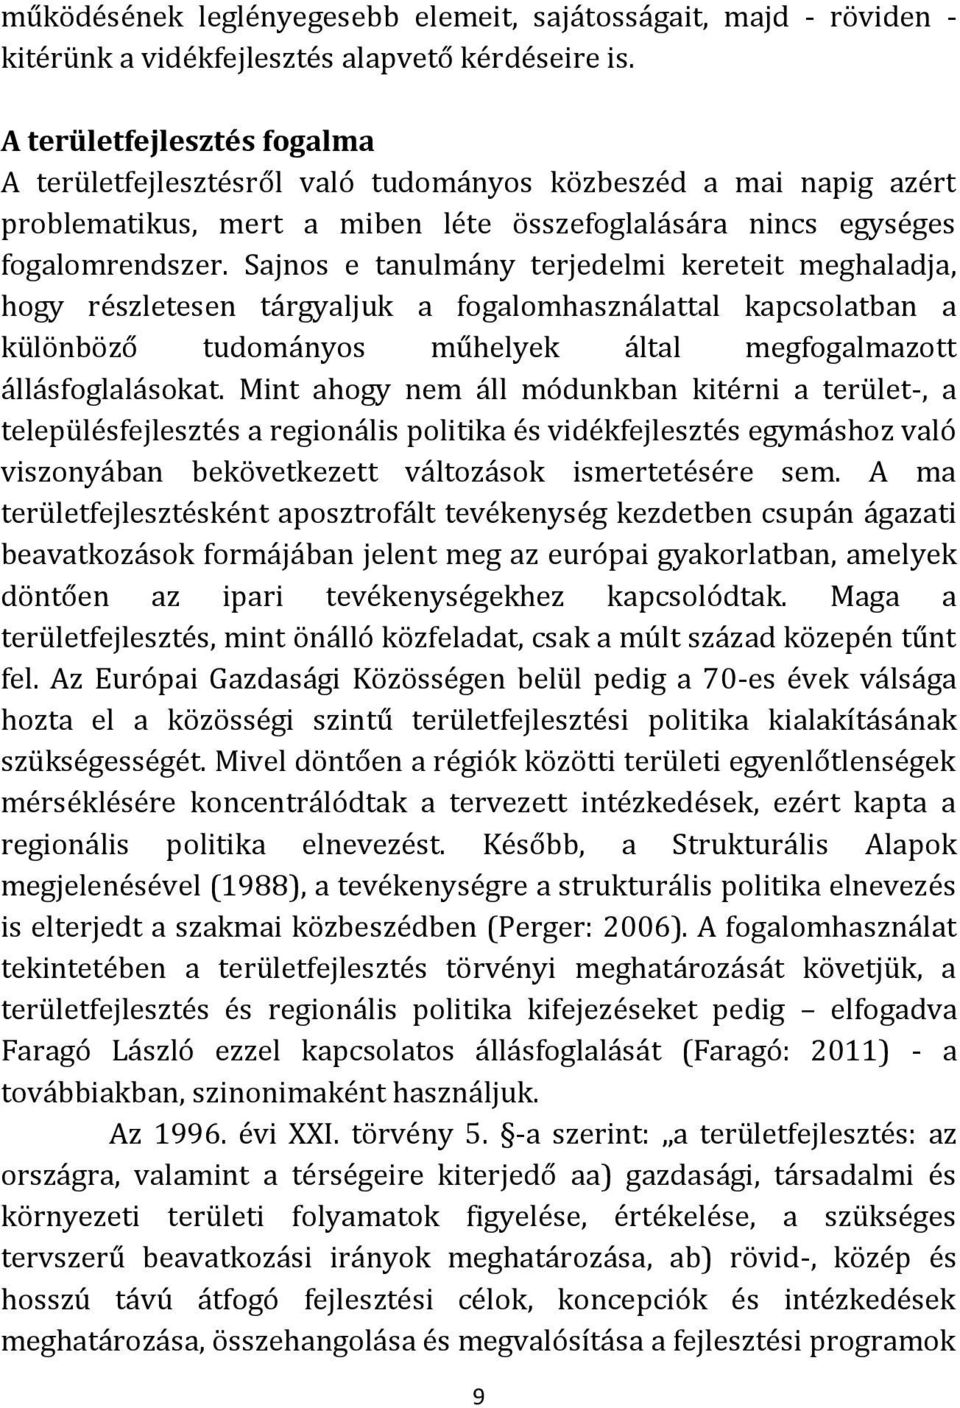 SZEKSZÁRDI SZOCIÁLIS MŰHELYTANULMÁNYOK 5. - PDF Ingyenes letöltés